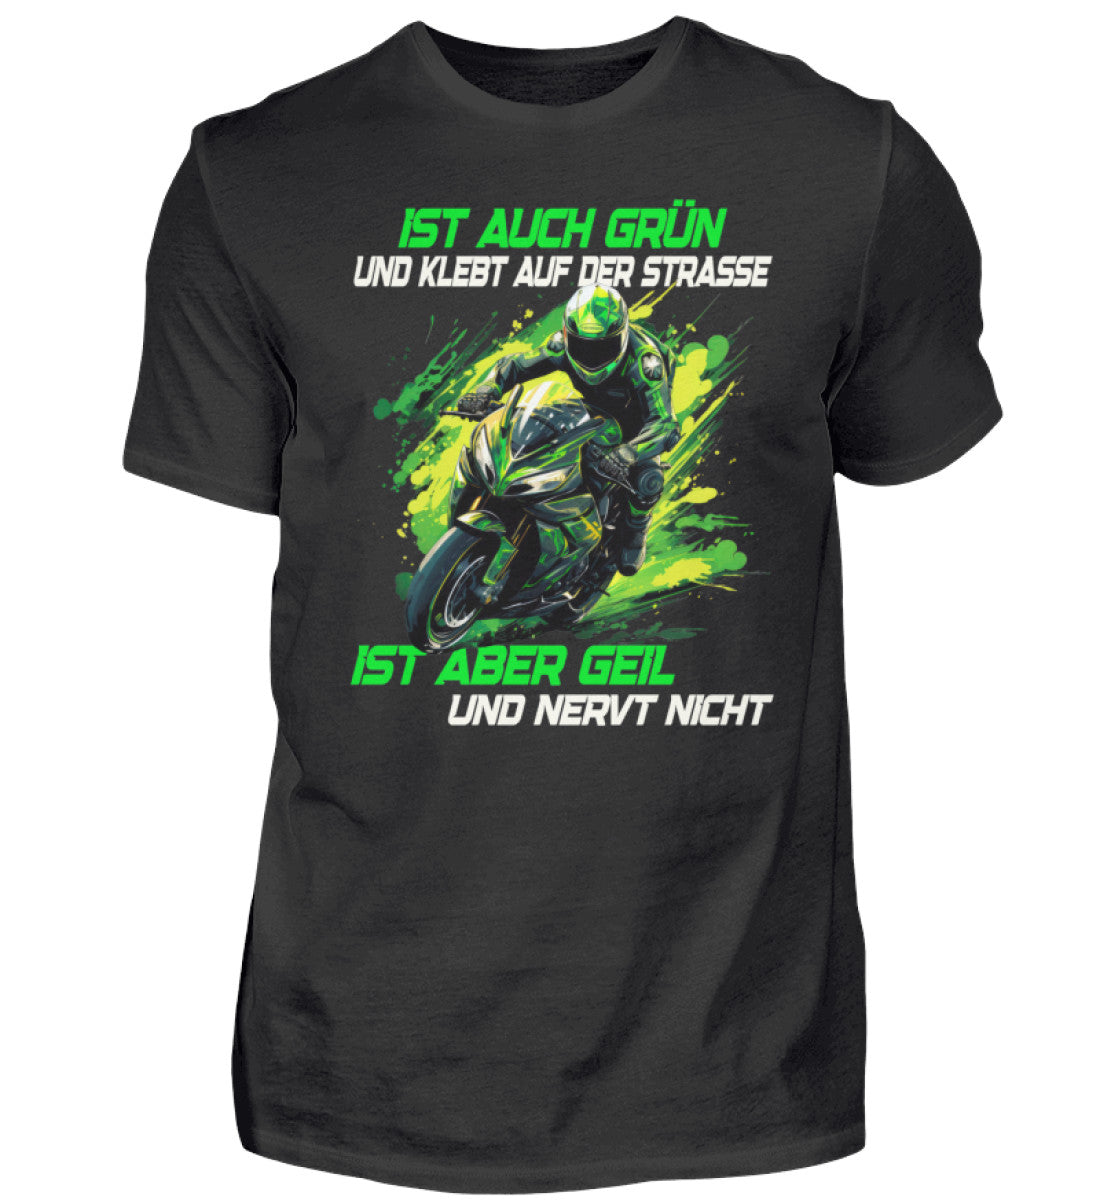 Ein T-Shirt für Motorradfahrer von Wingbikers mit dem Aufdruck, Ist auch grün und klebt auf der Straße, ist aber geil und nervt nicht, in schwarz.